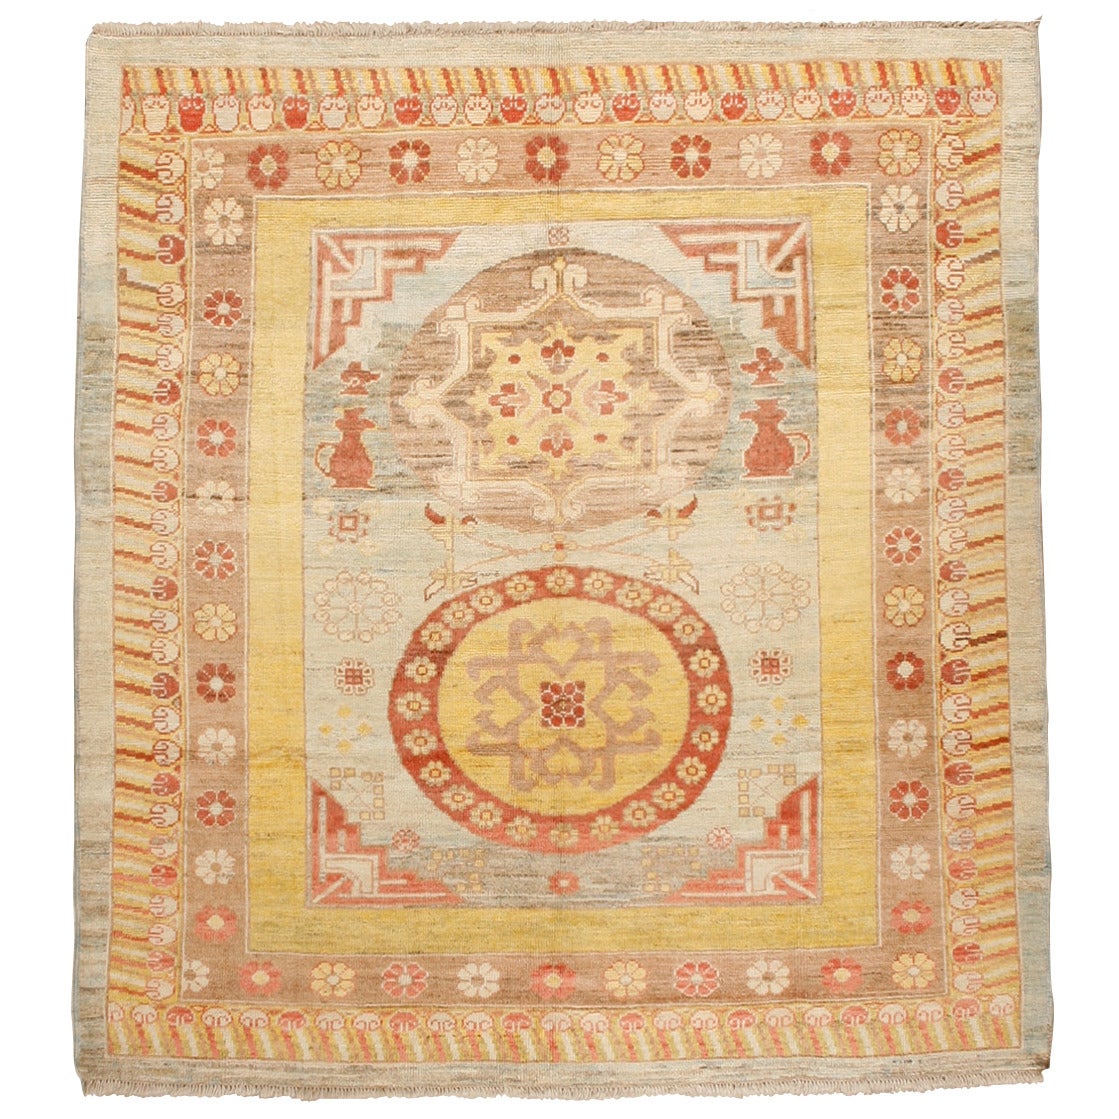 Tapis Khotan en laine vintage de taille carrée